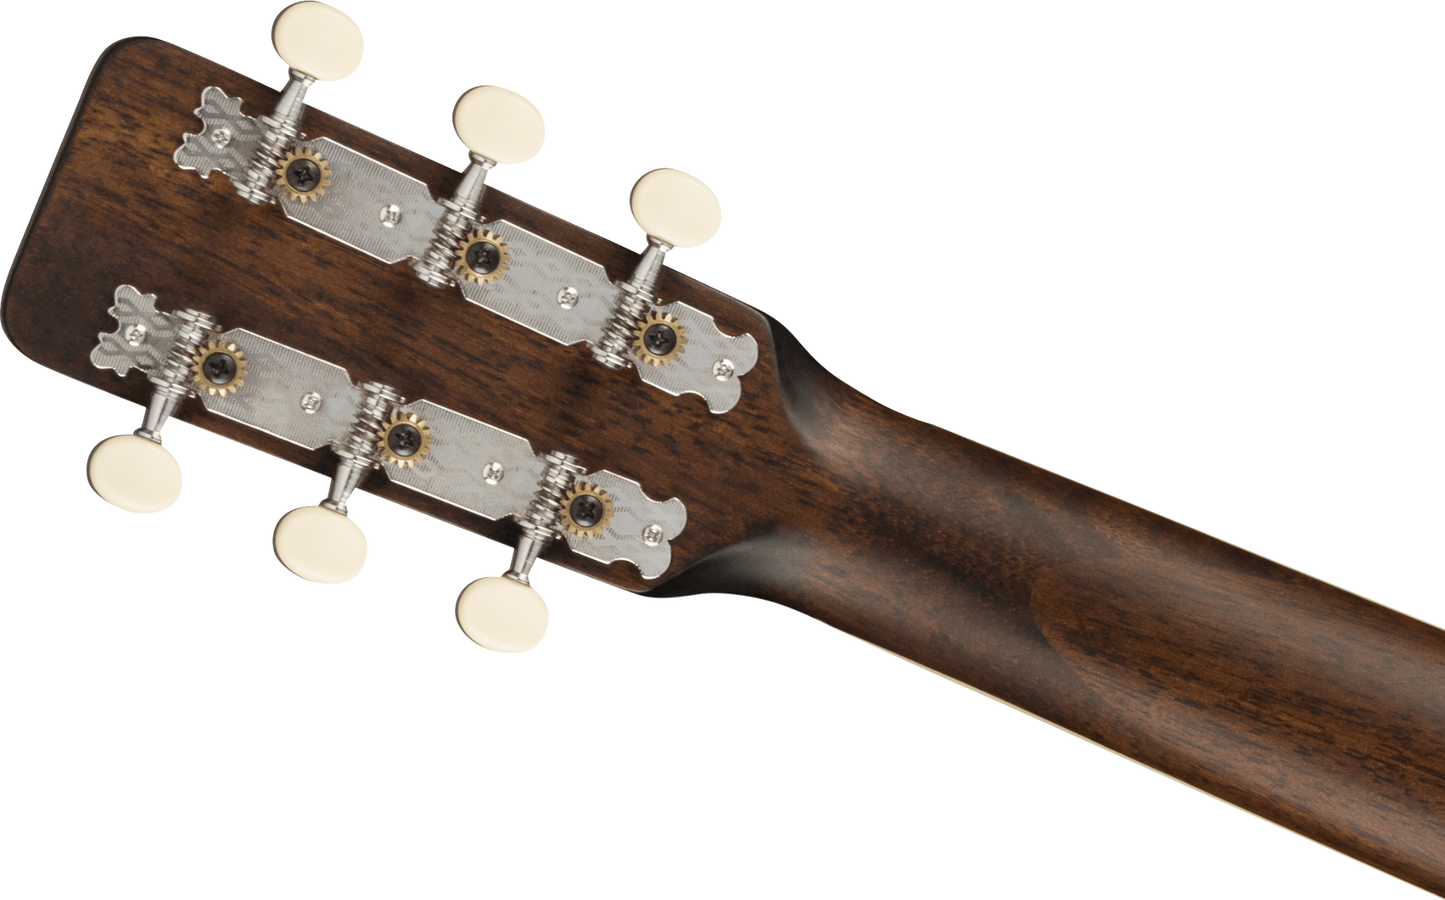 Gretsch G9500 Jim Dandy 24” Flat Top Guitar - Frontier Stain